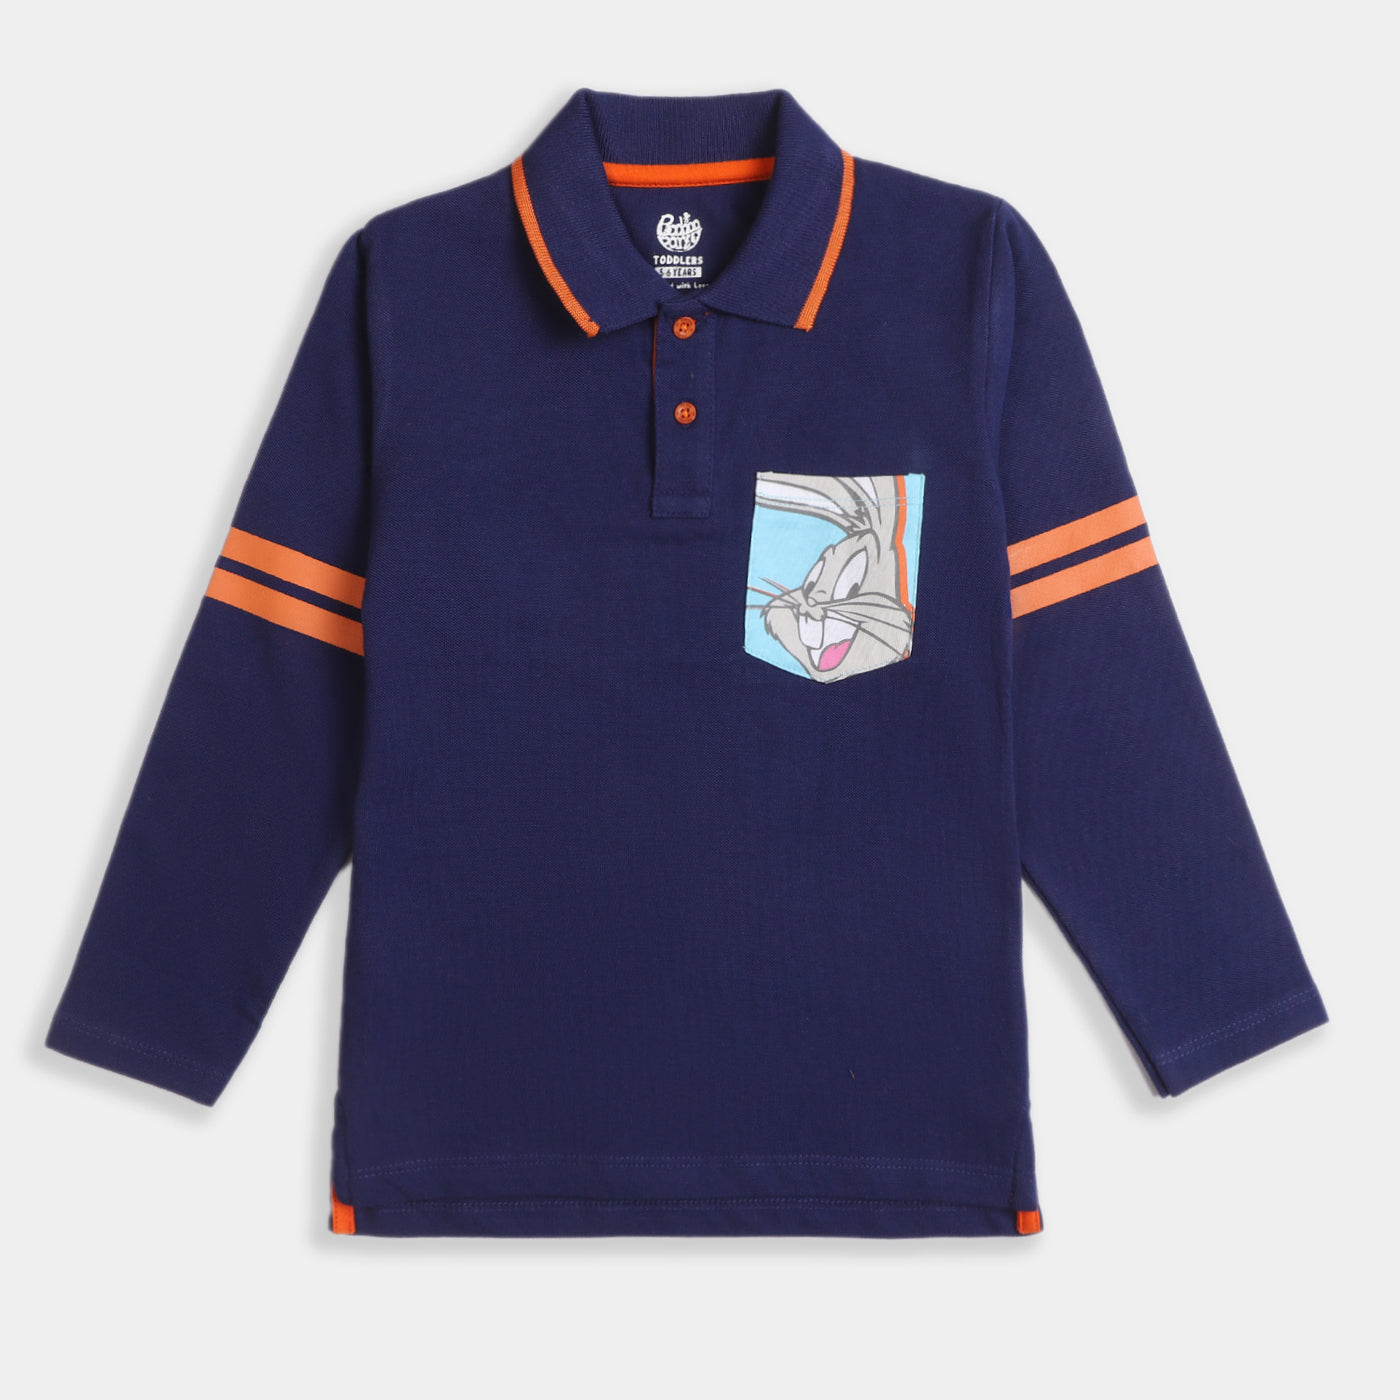 Boys Cotton Polo T-Shirt -Navy Blue